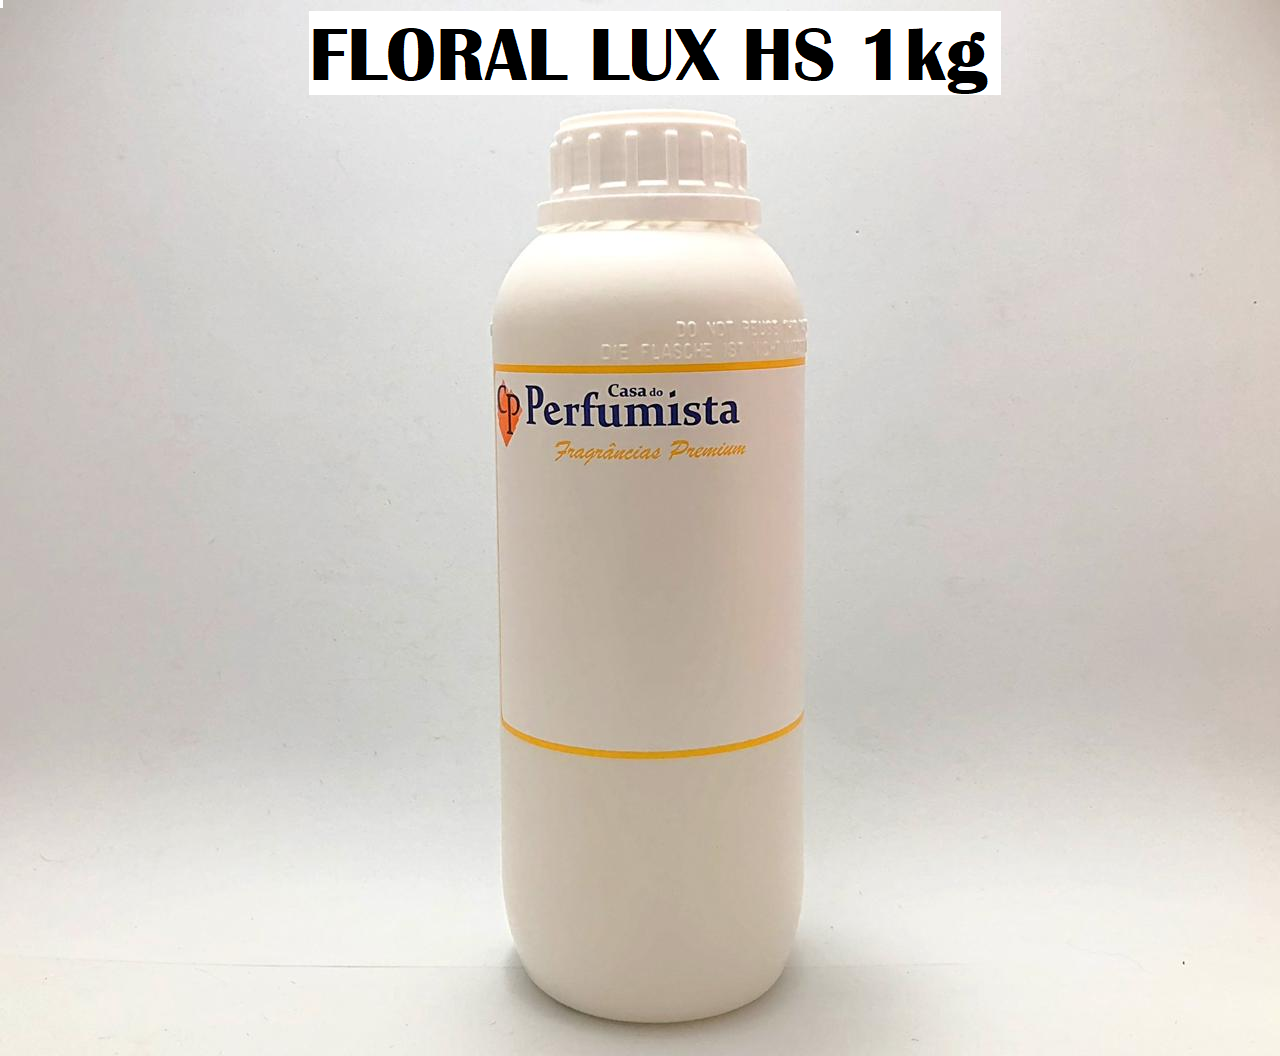 FLORAL LUX HS - 1kg